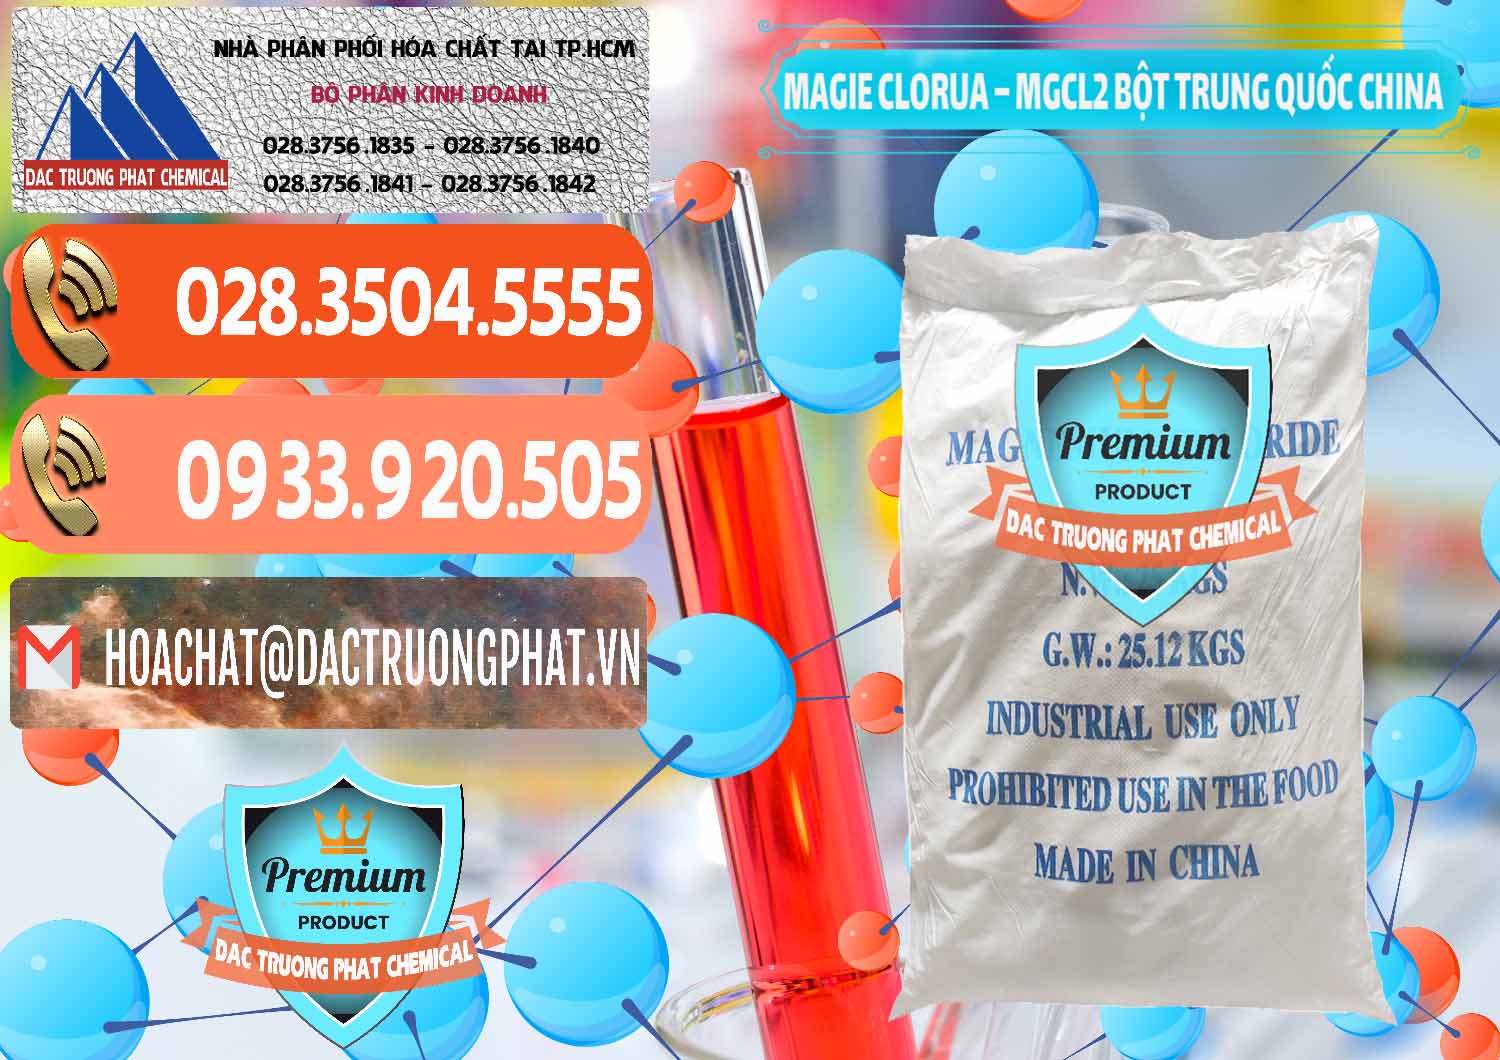 Công ty nhập khẩu ( bán ) Magie Clorua – MGCL2 96% Dạng Bột Bao Chữ Xanh Trung Quốc China - 0207 - Công ty chuyên bán ( cung cấp ) hóa chất tại TP.HCM - hoachatmientay.com